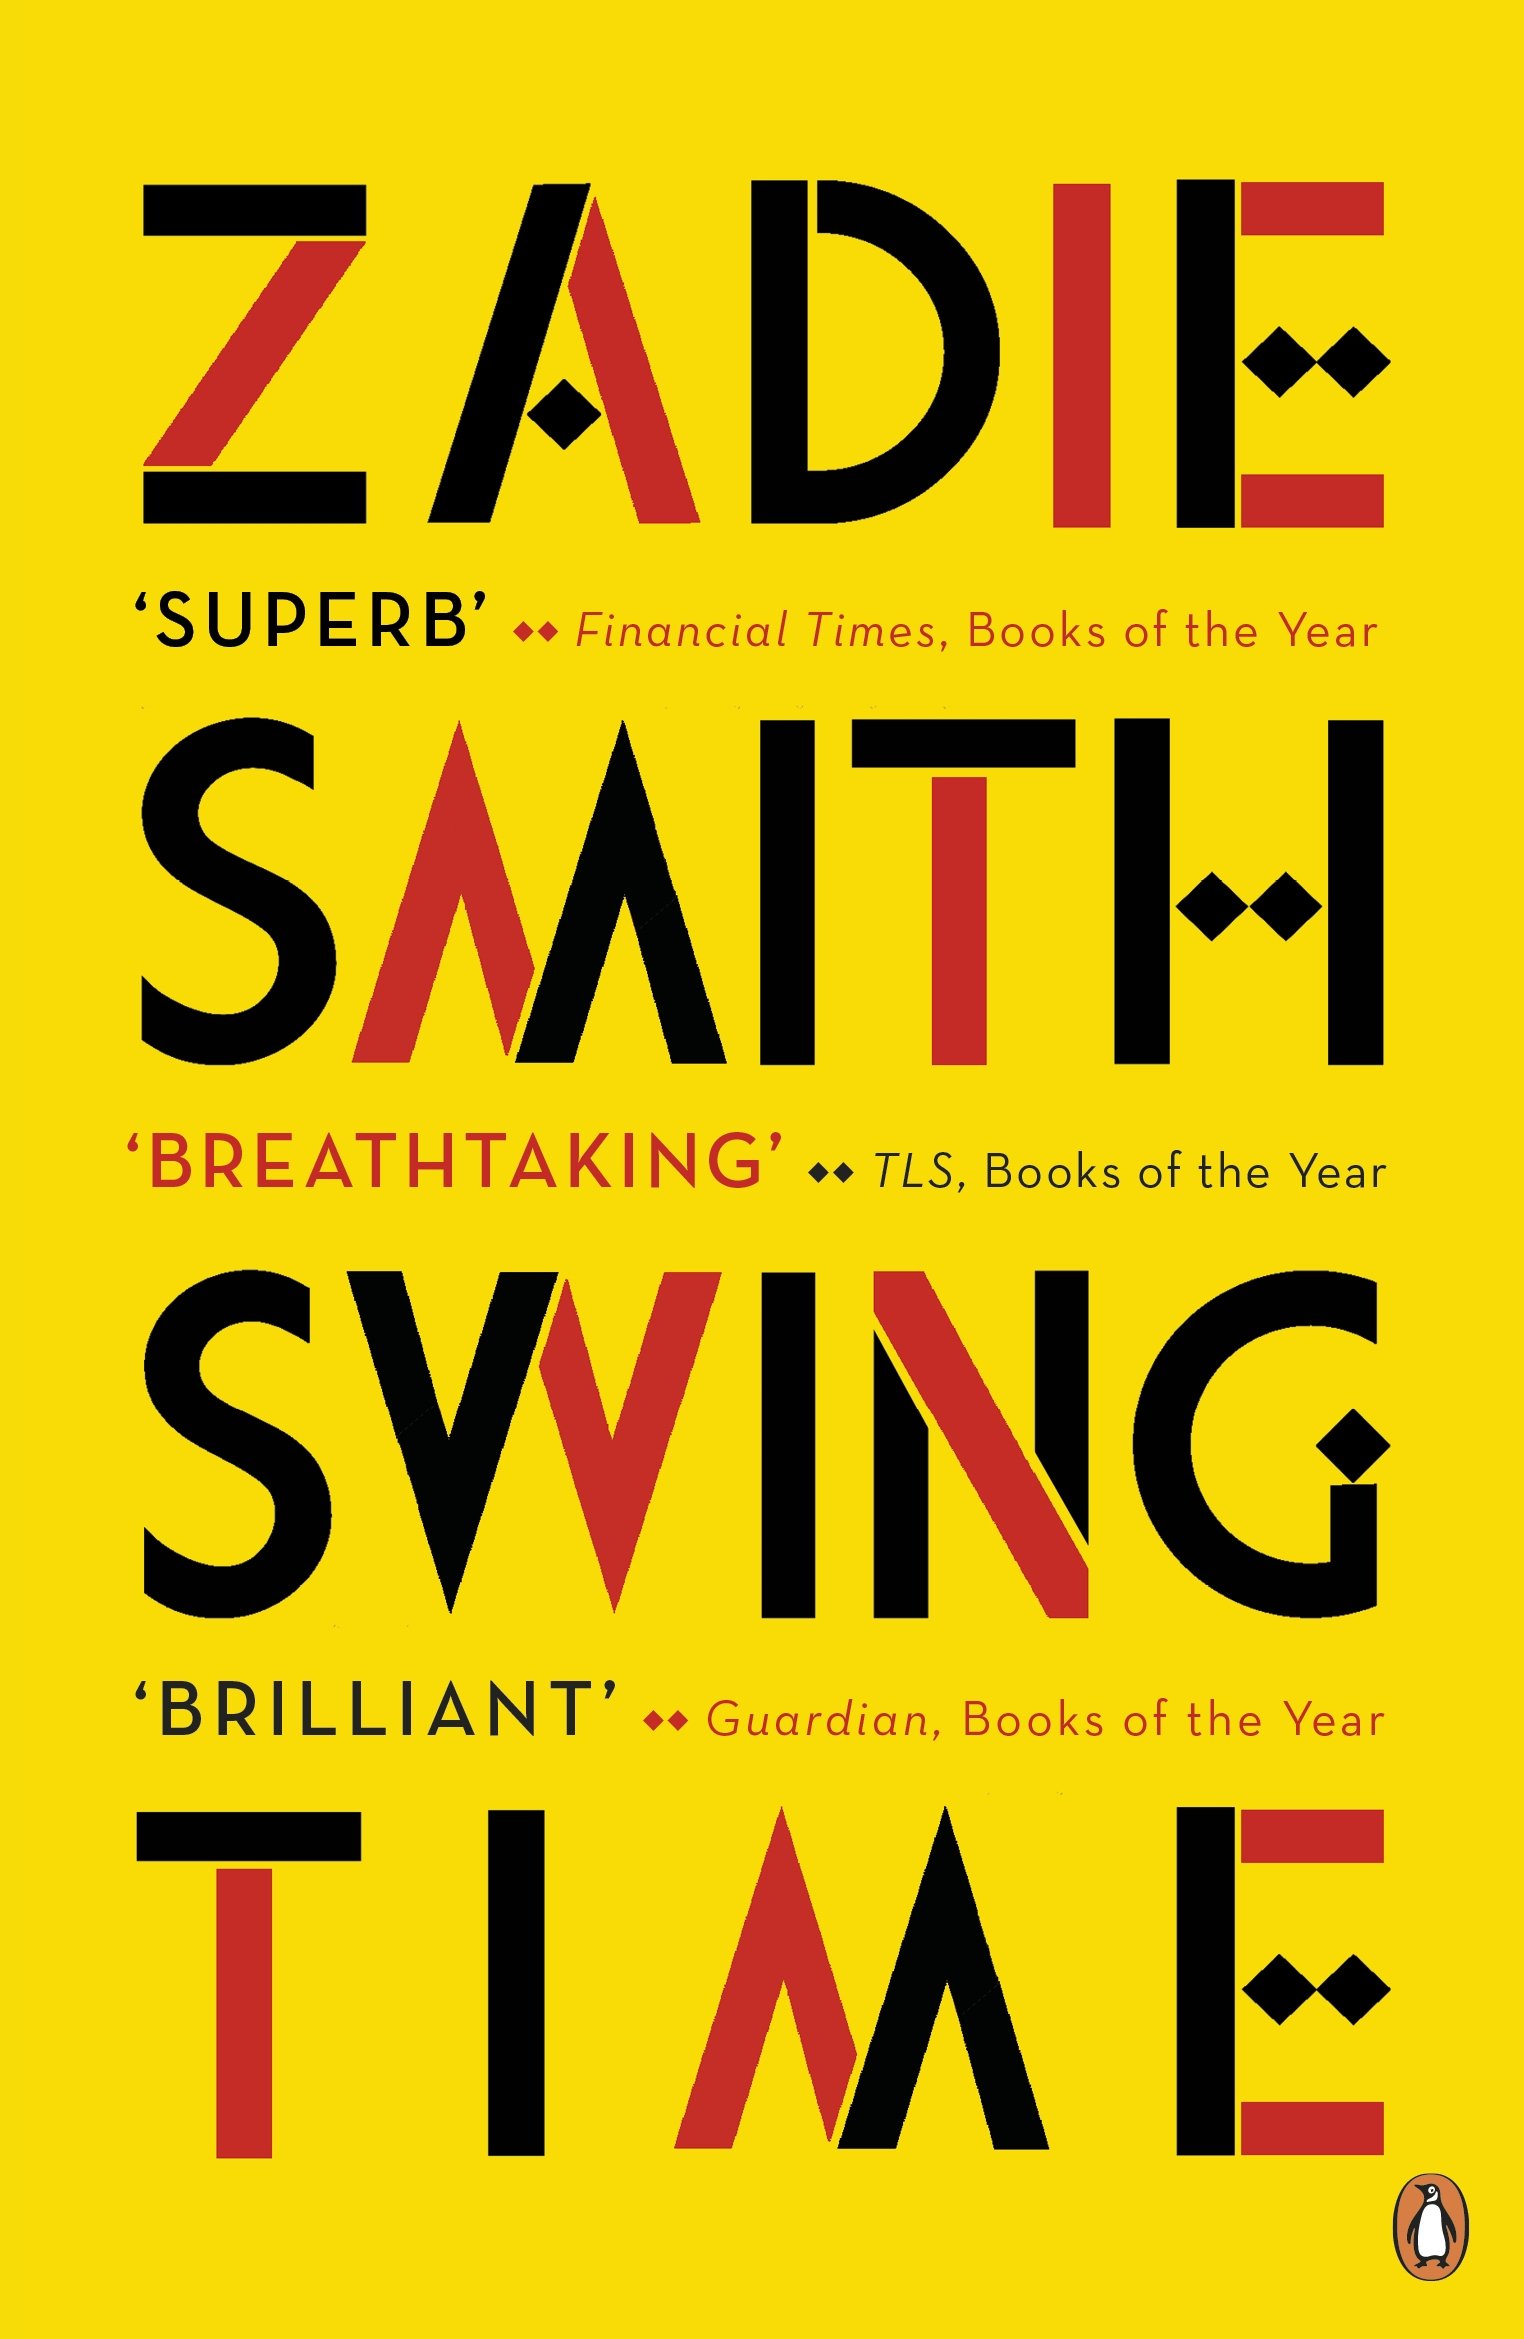 Swing Time | Zadie Smith